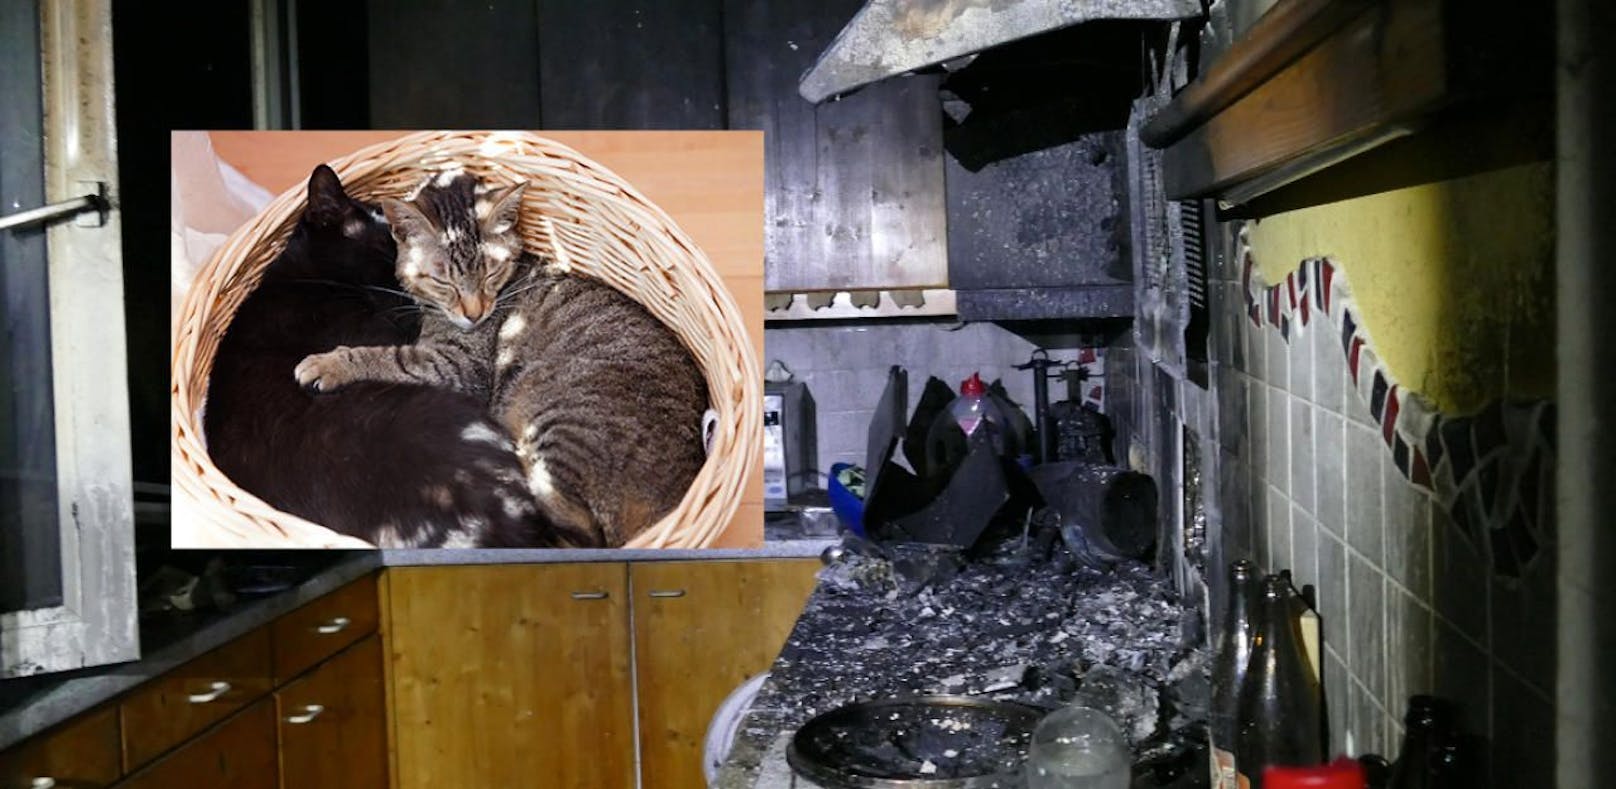 Großer Schaden nach Küchenbrand, die Feuerwehr konnte zwei Katzen rechtzeitig retten.